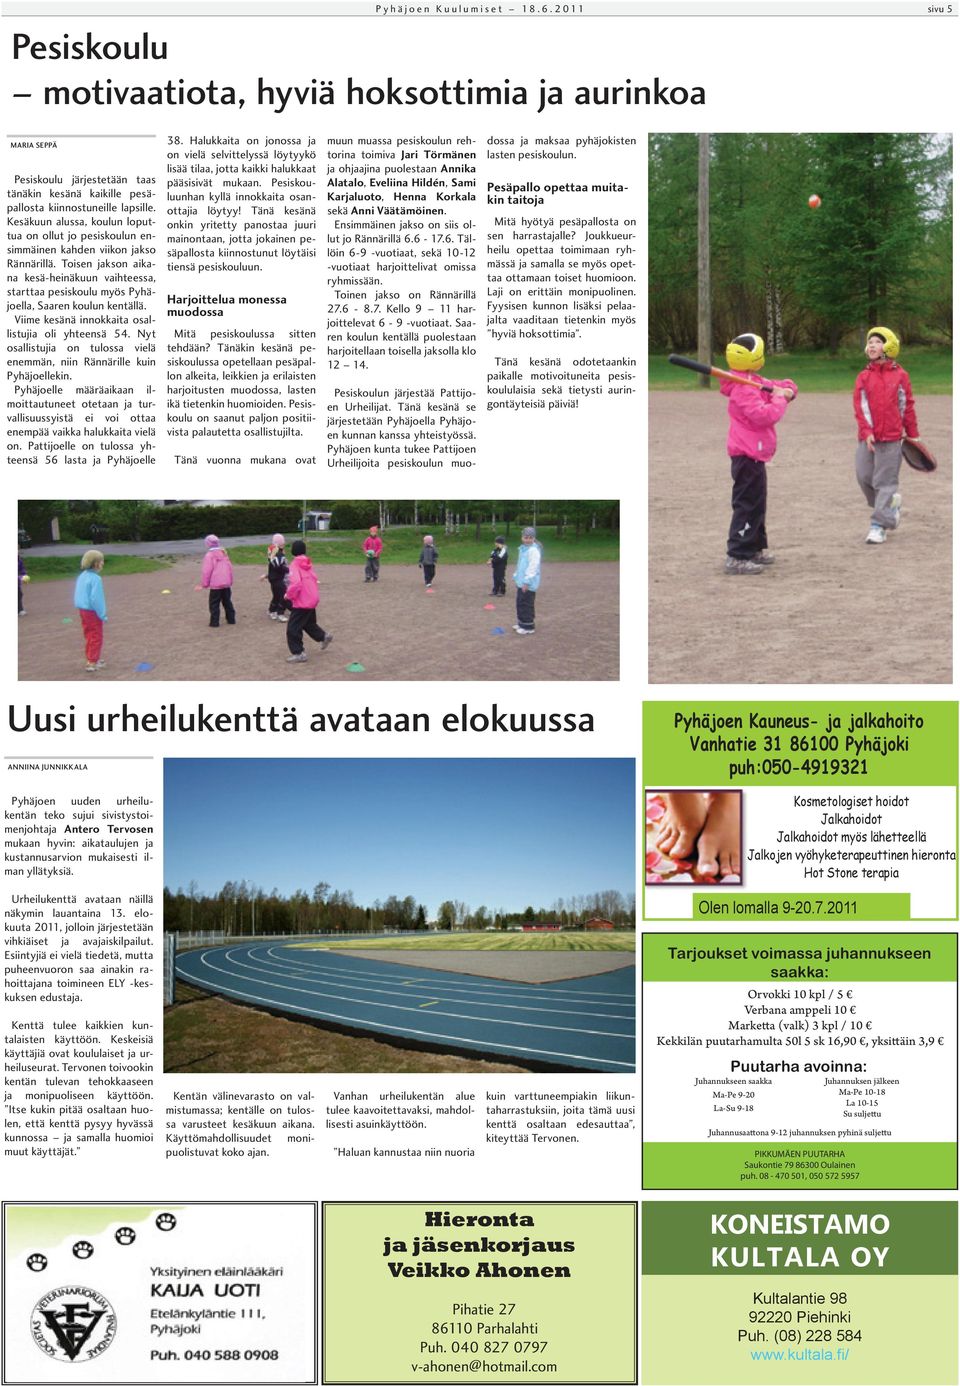 Toisen jakson aikana kesä-heinäkuun vaihteessa, starttaa pesiskoulu myös Pyhäjoella, Saaren koulun kentällä. Viime kesänä innokkaita osallistujia oli yhteensä 54.